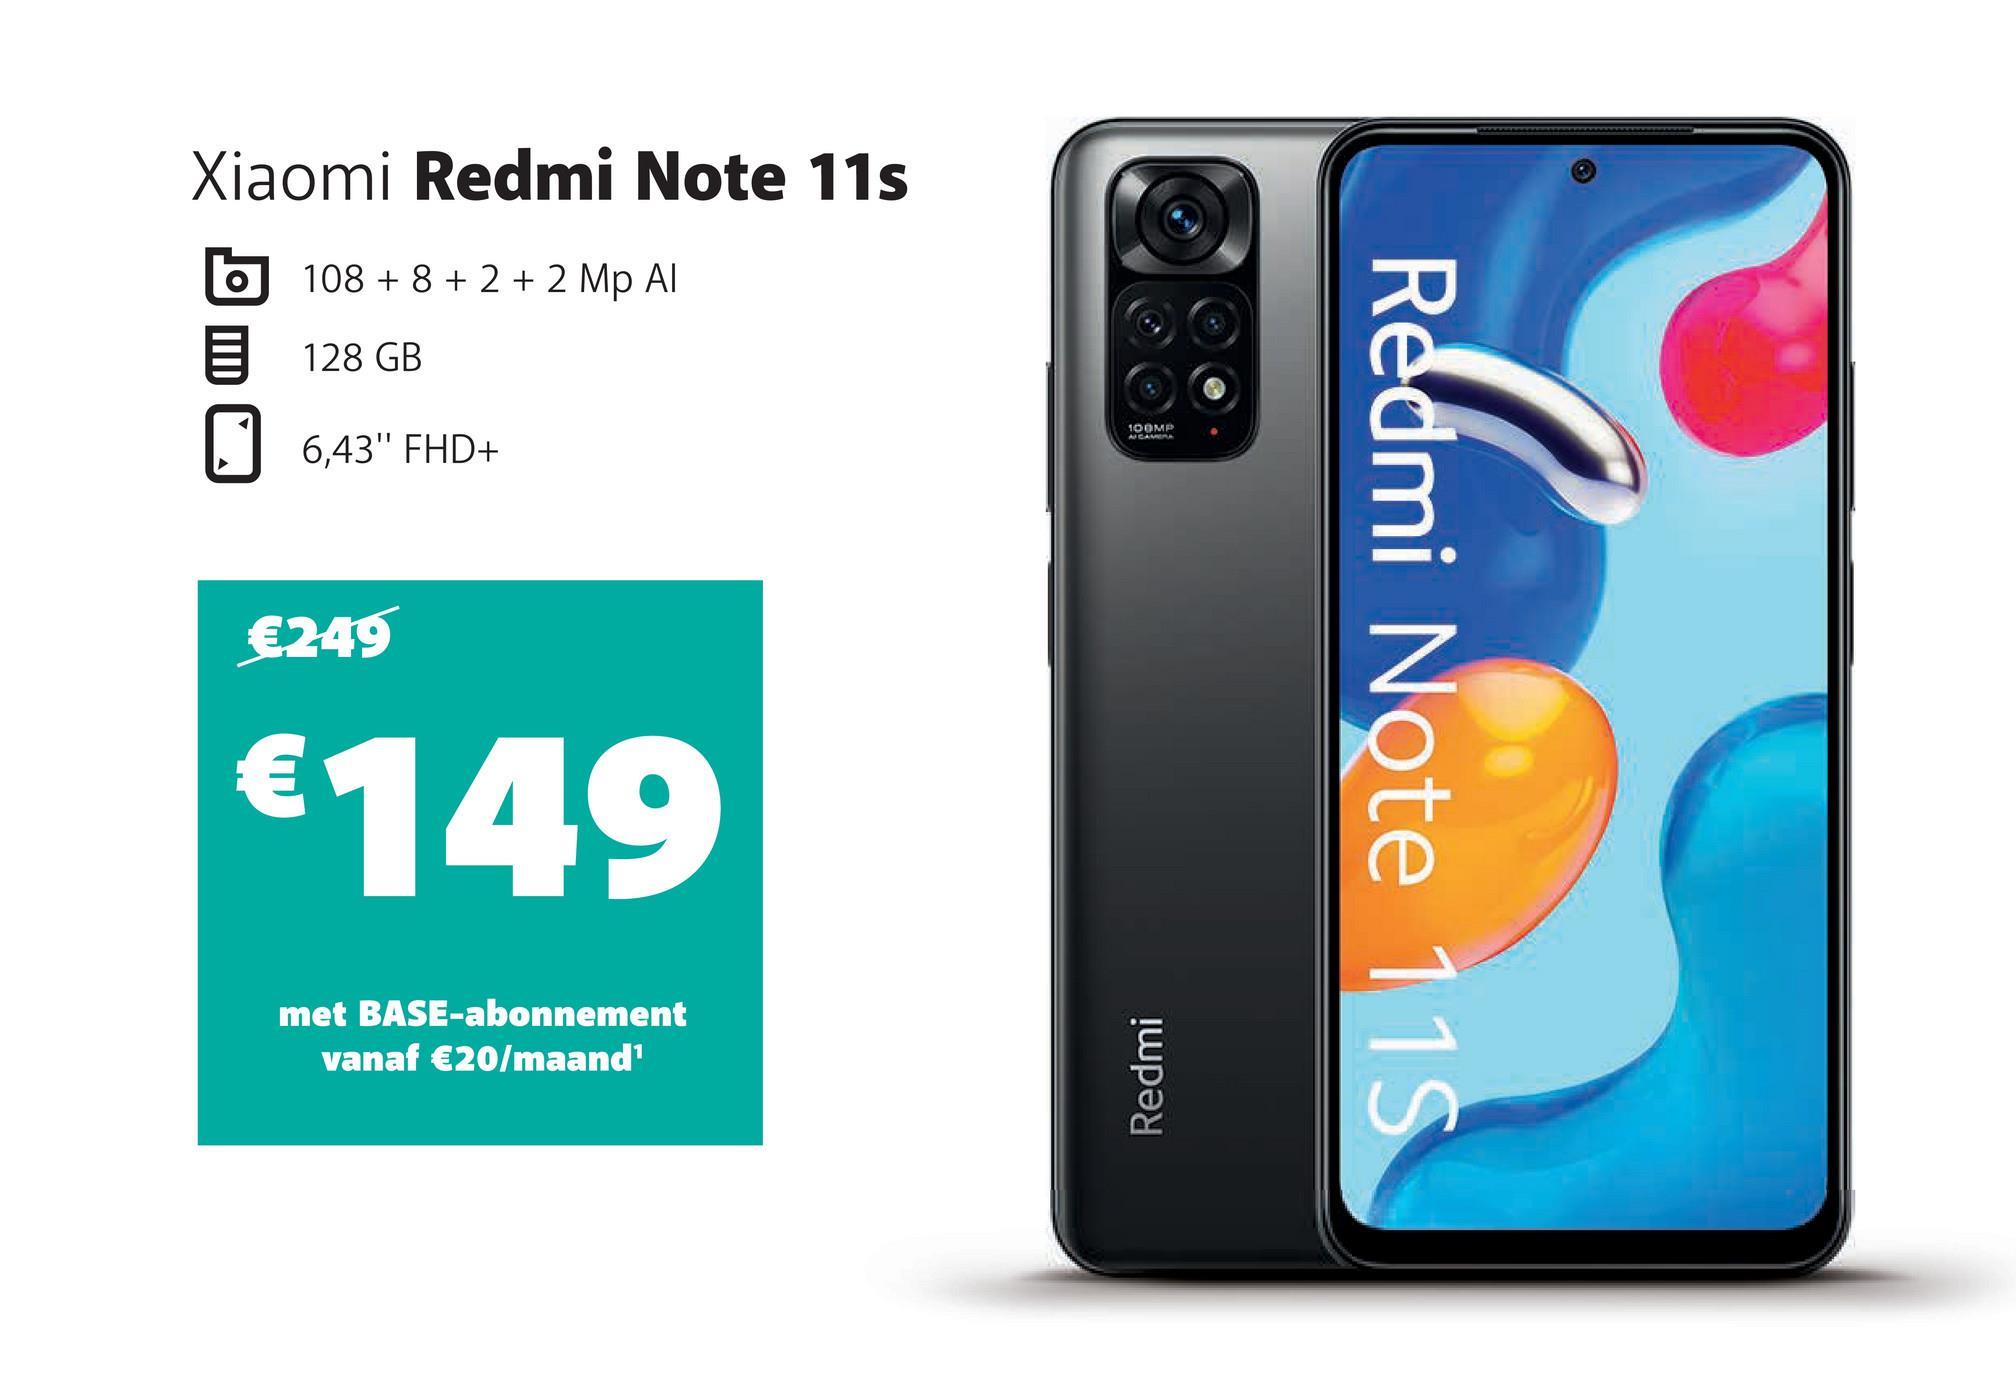 Xiaomi Redmi Note 11s
108 + 8 + 2 + 2 Mp Al
128 GB
0
6,43" FHD+
€249
€149
met BASE-abonnement
vanaf €20/maand¹
100MP
Redmi
Redmi Note 115